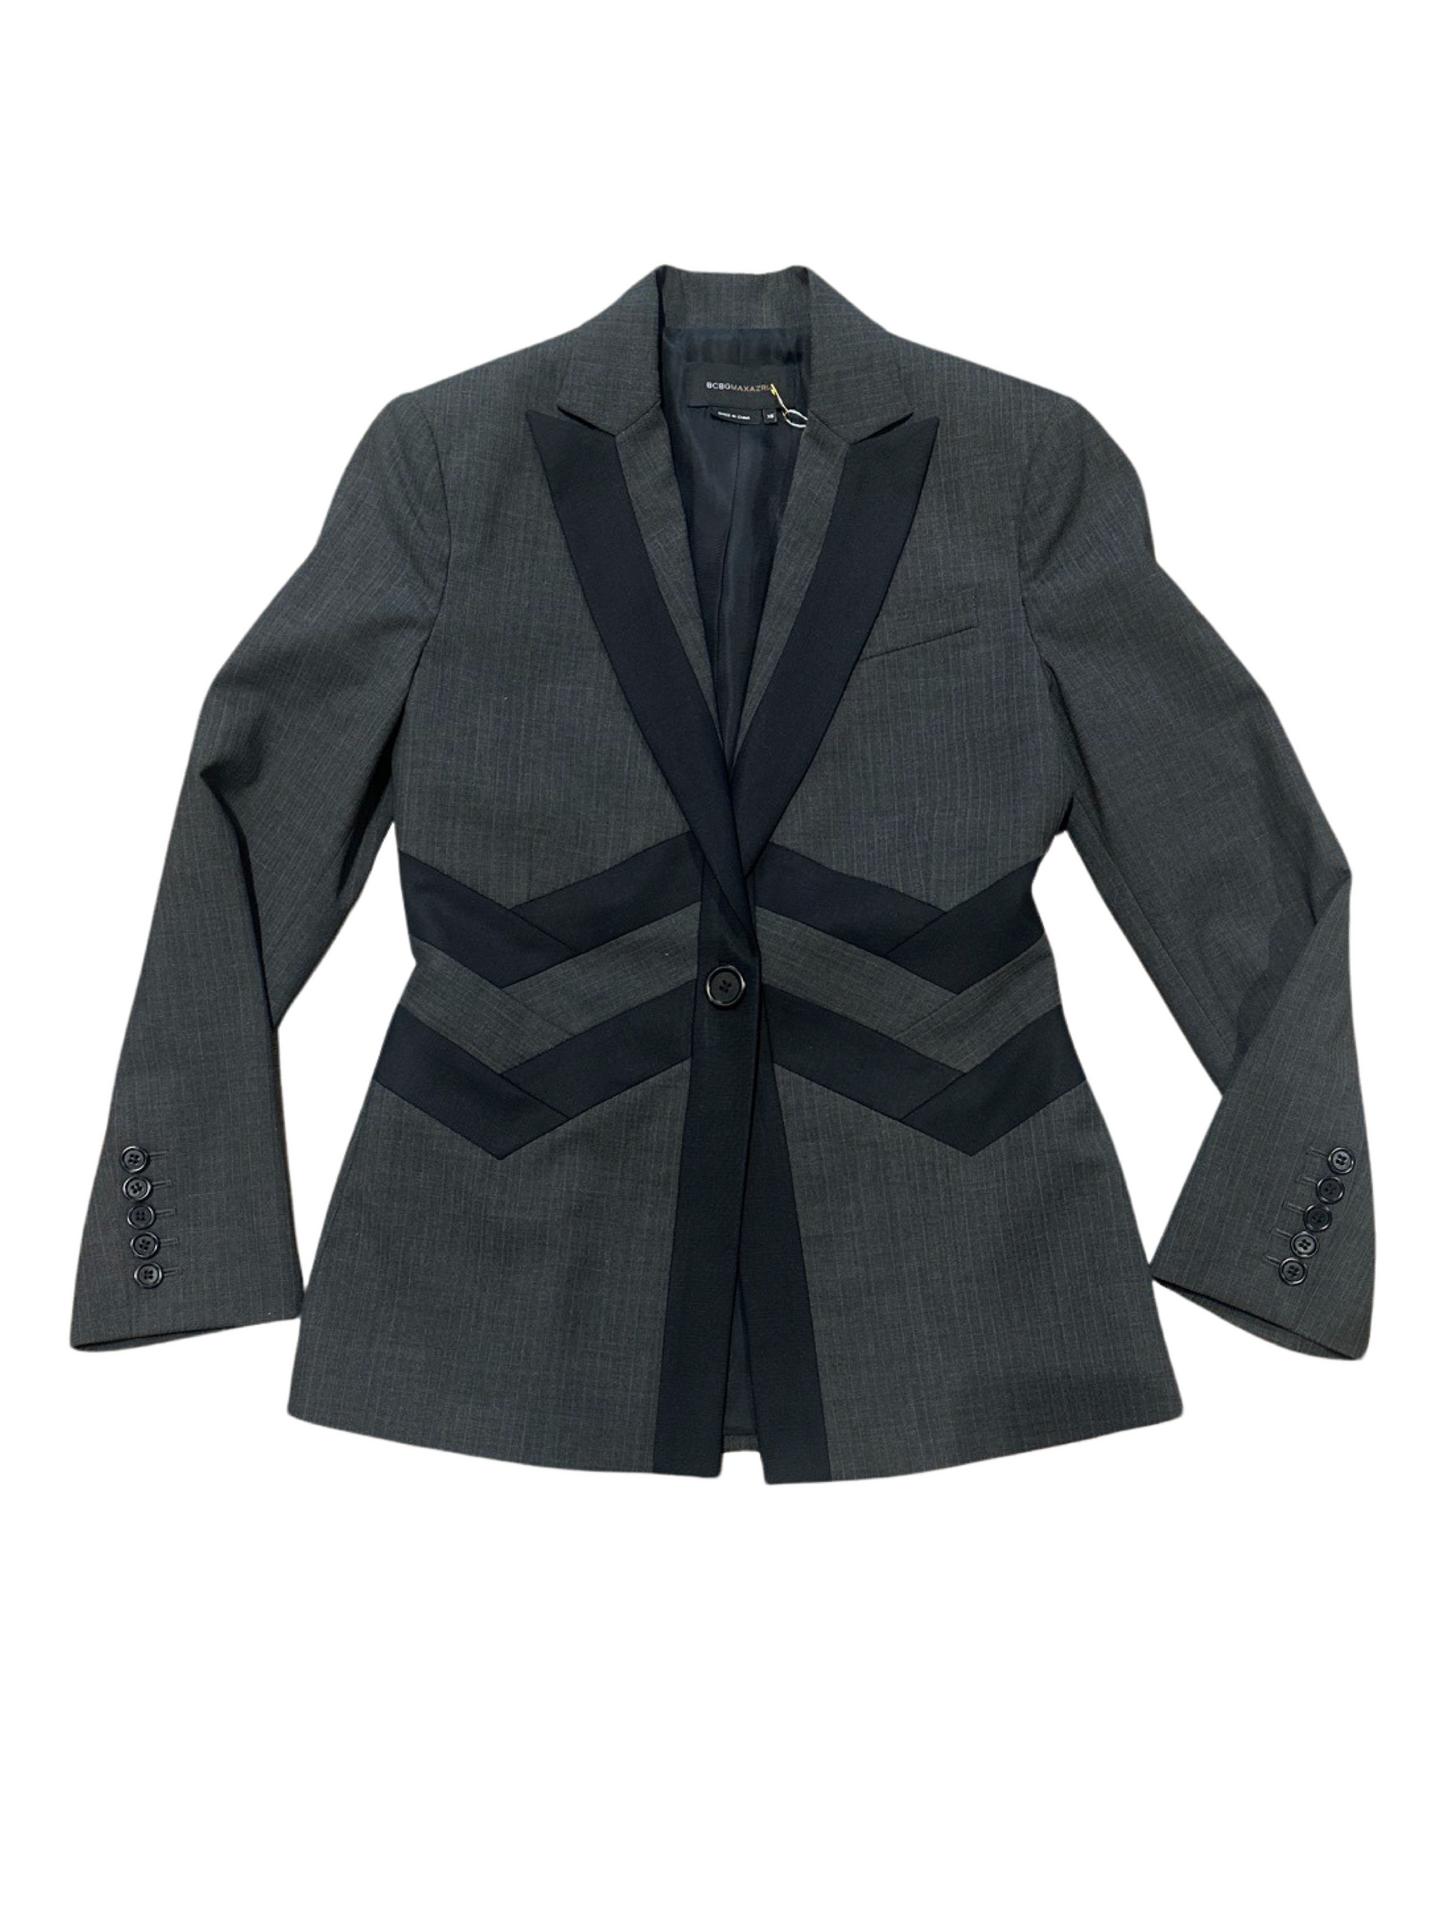 BCBGMaxAzria Grey Black Career Blazer Jacket & Trousers Martine Set XS/2